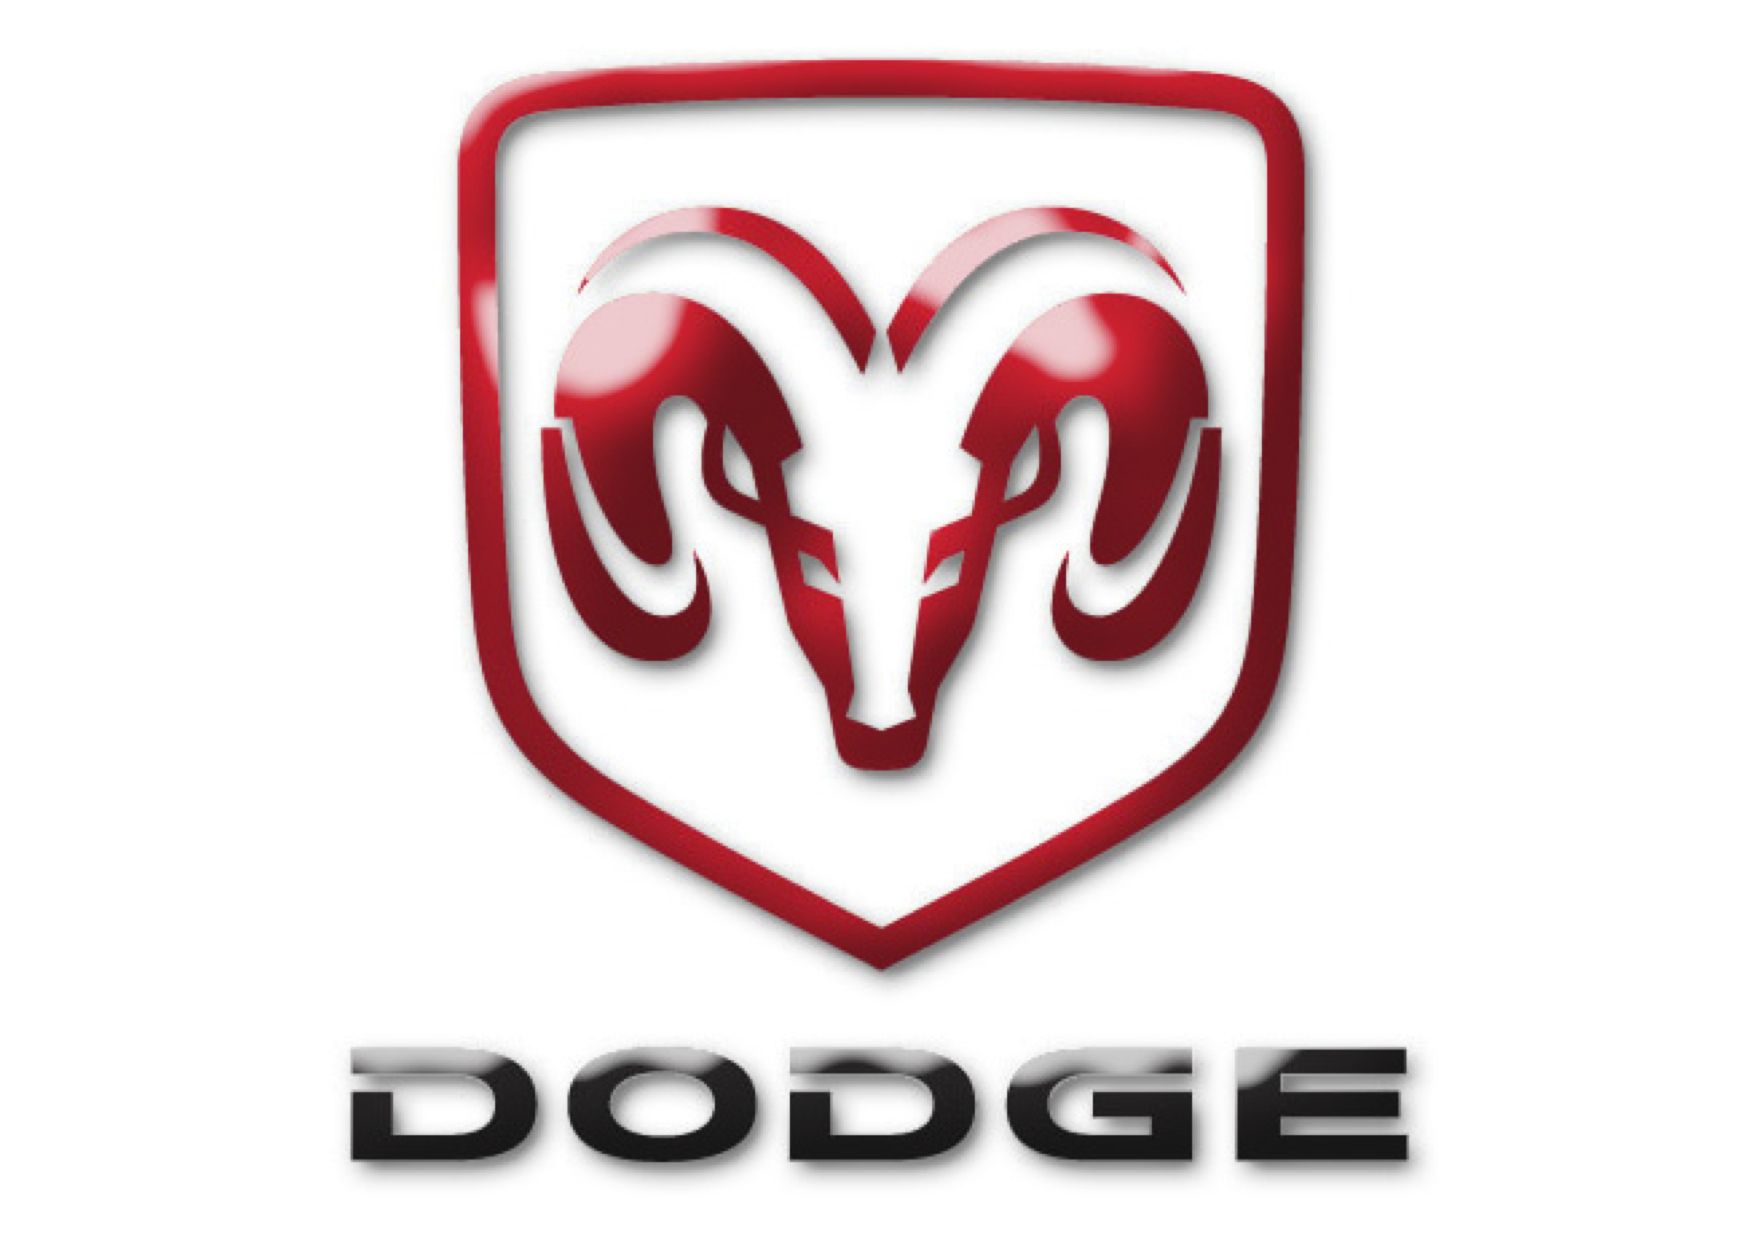 Free download dodge ram wallpaper dodge logo wallpaper tribal dodge ram logo dodge [1754x1239] for your Desktop, Mobile & Tablet. Explore Dodge Logo Wallpaper. Dodge Truck Wallpaper, Dodge Ram